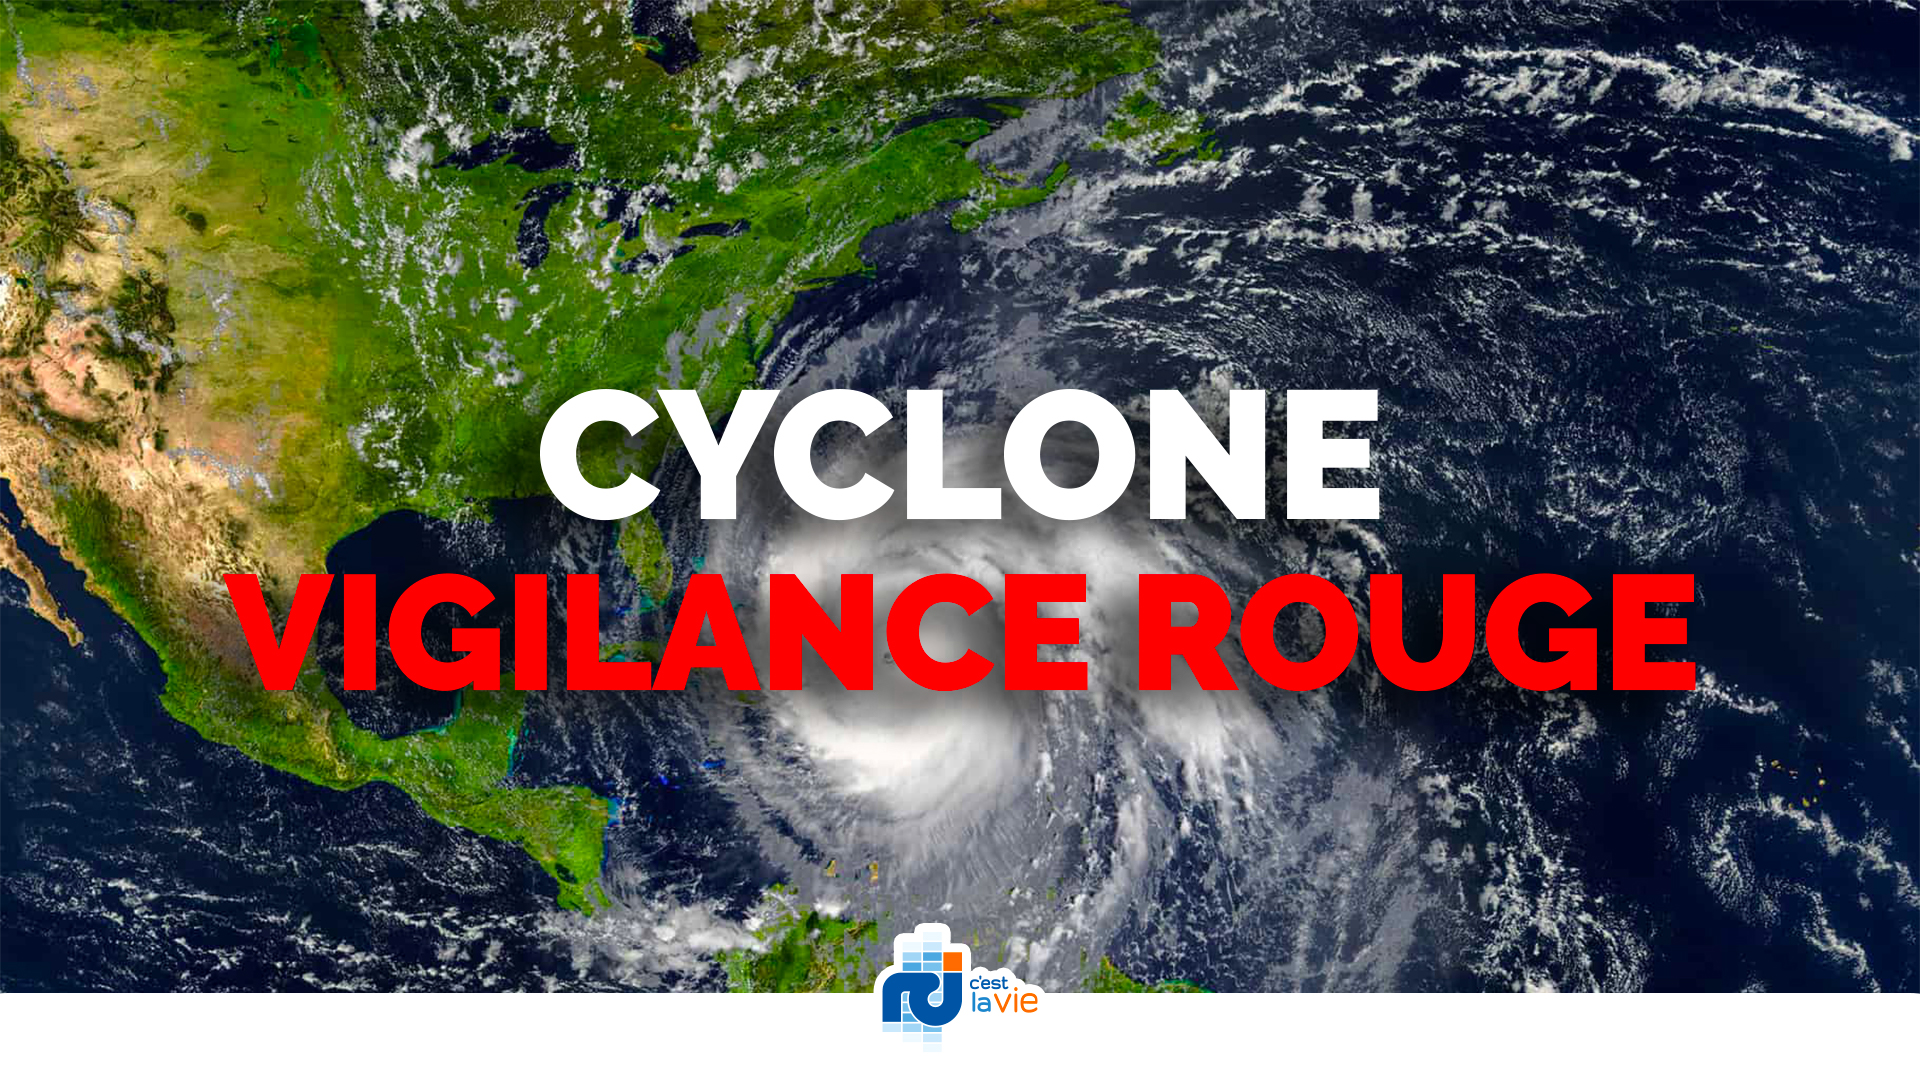     Vigilance Rouge : la tempête Bret passe finalement au sud de Sainte-Lucie 

